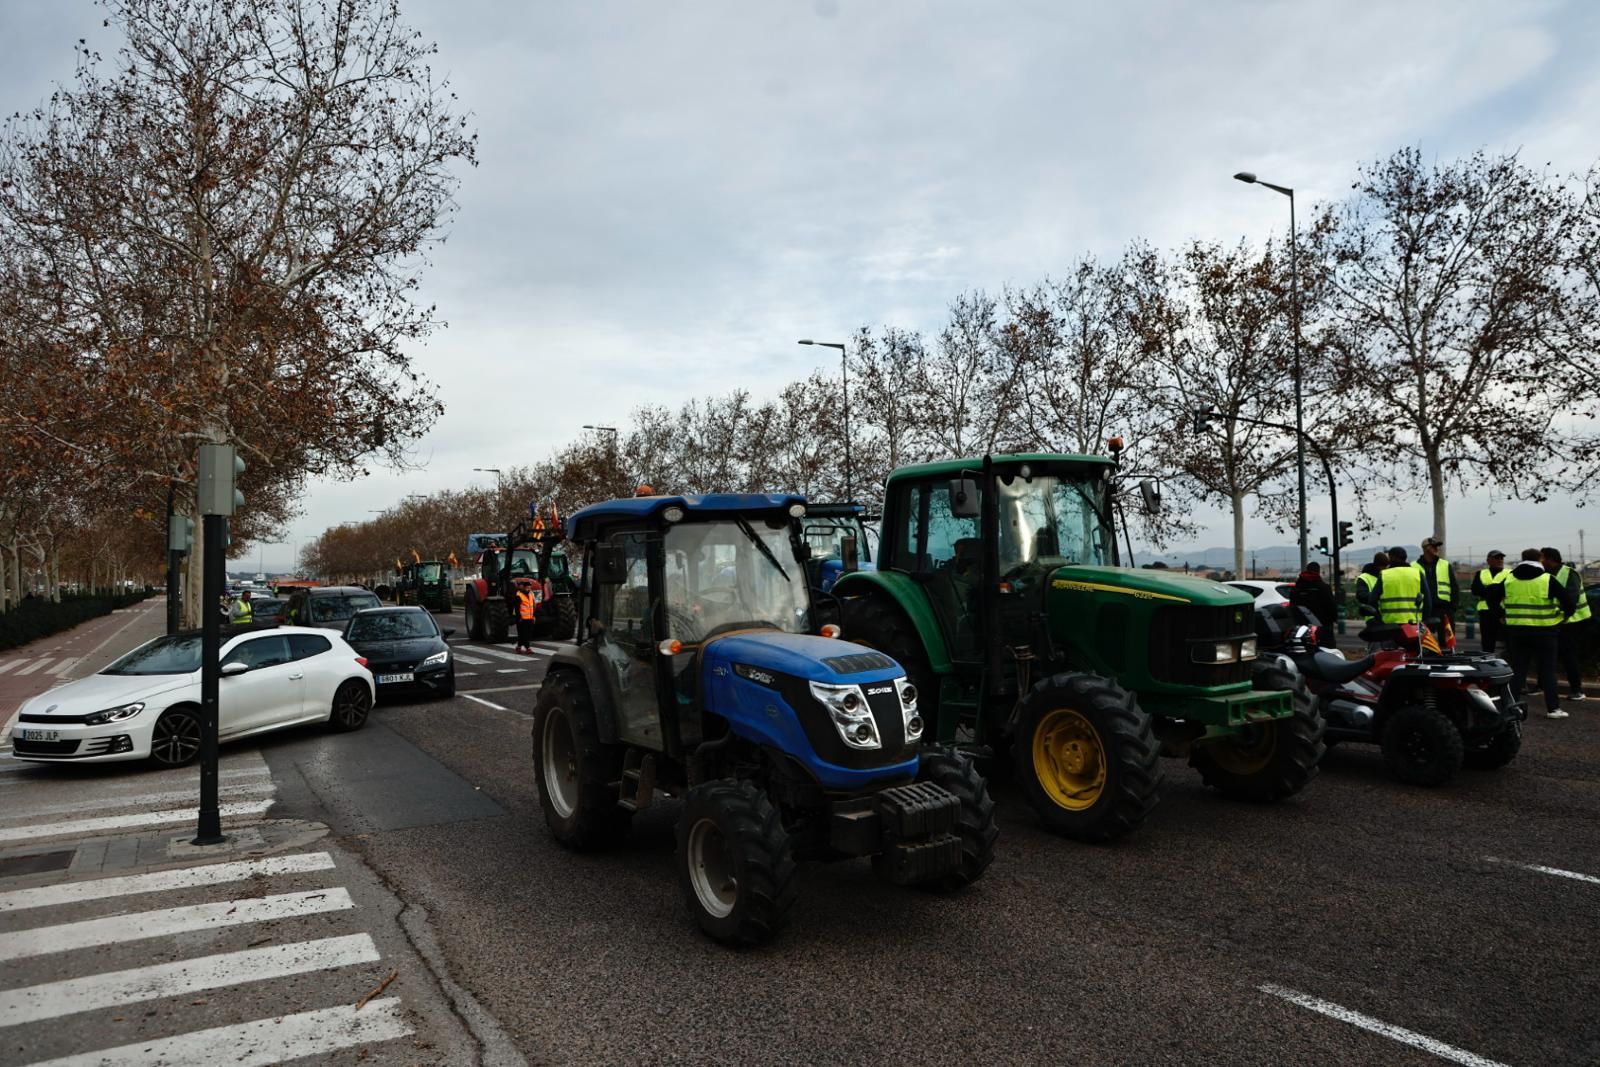 Las primeras tractoradas colapsan València